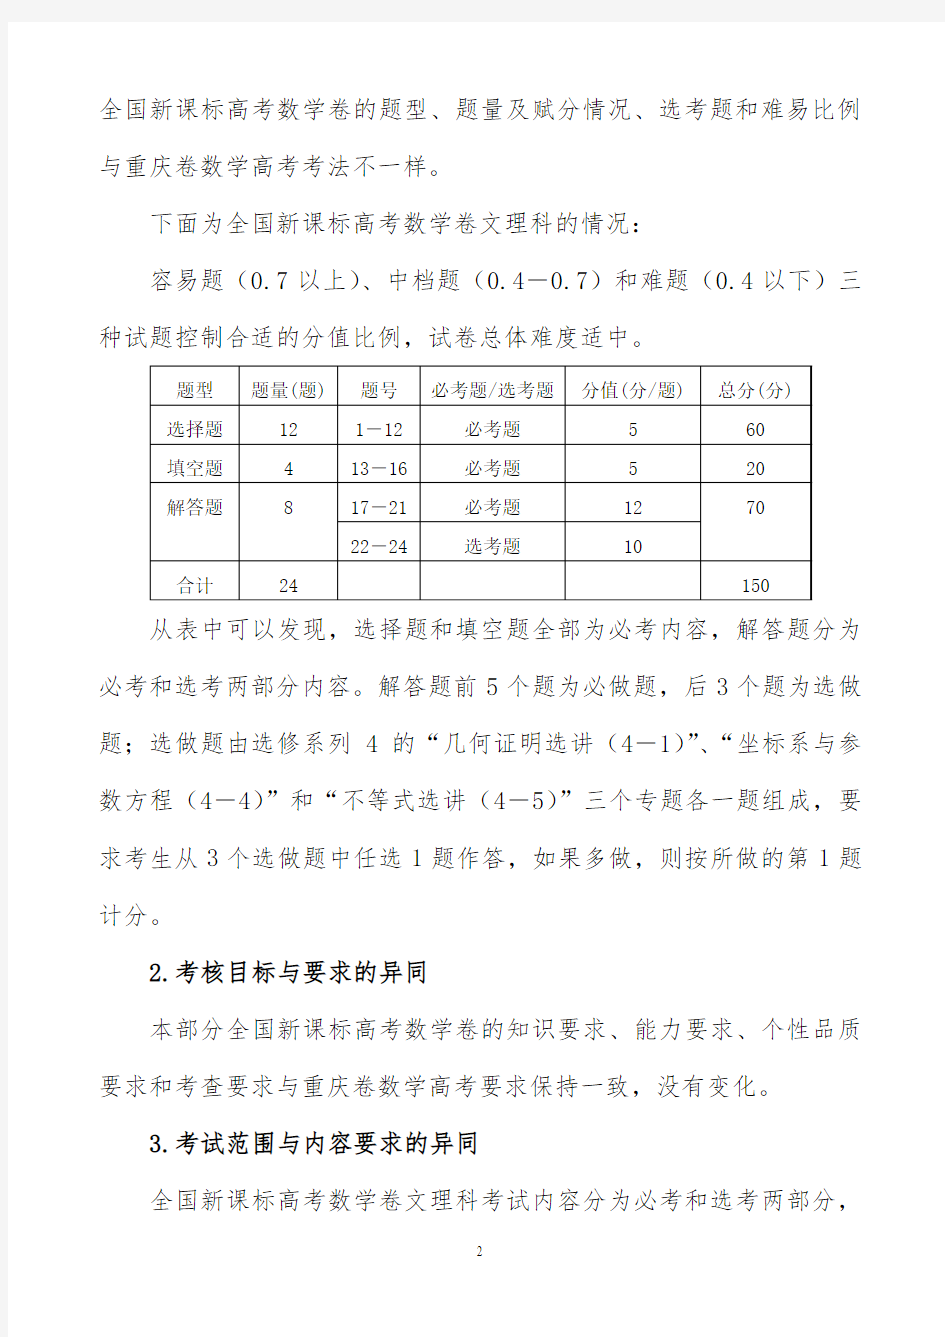 重庆市高2017届数学学科复习教学指导意见